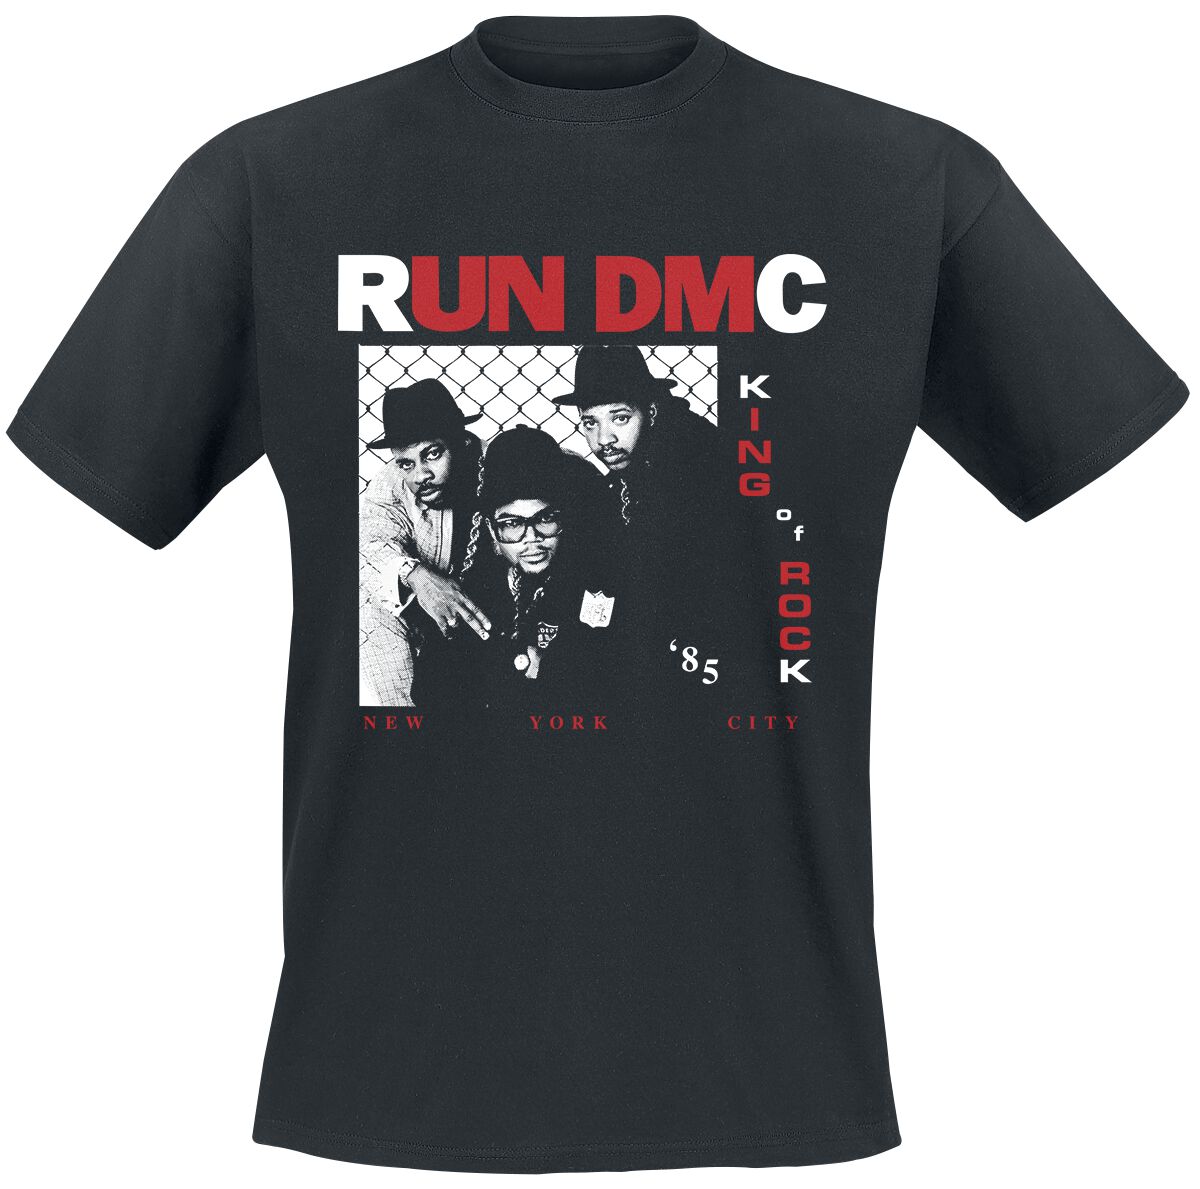 Run DMC T-Shirt - King Of Rock Photo - S bis XL - für Männer - Größe M - schwarz  - Lizenziertes Merchandise!